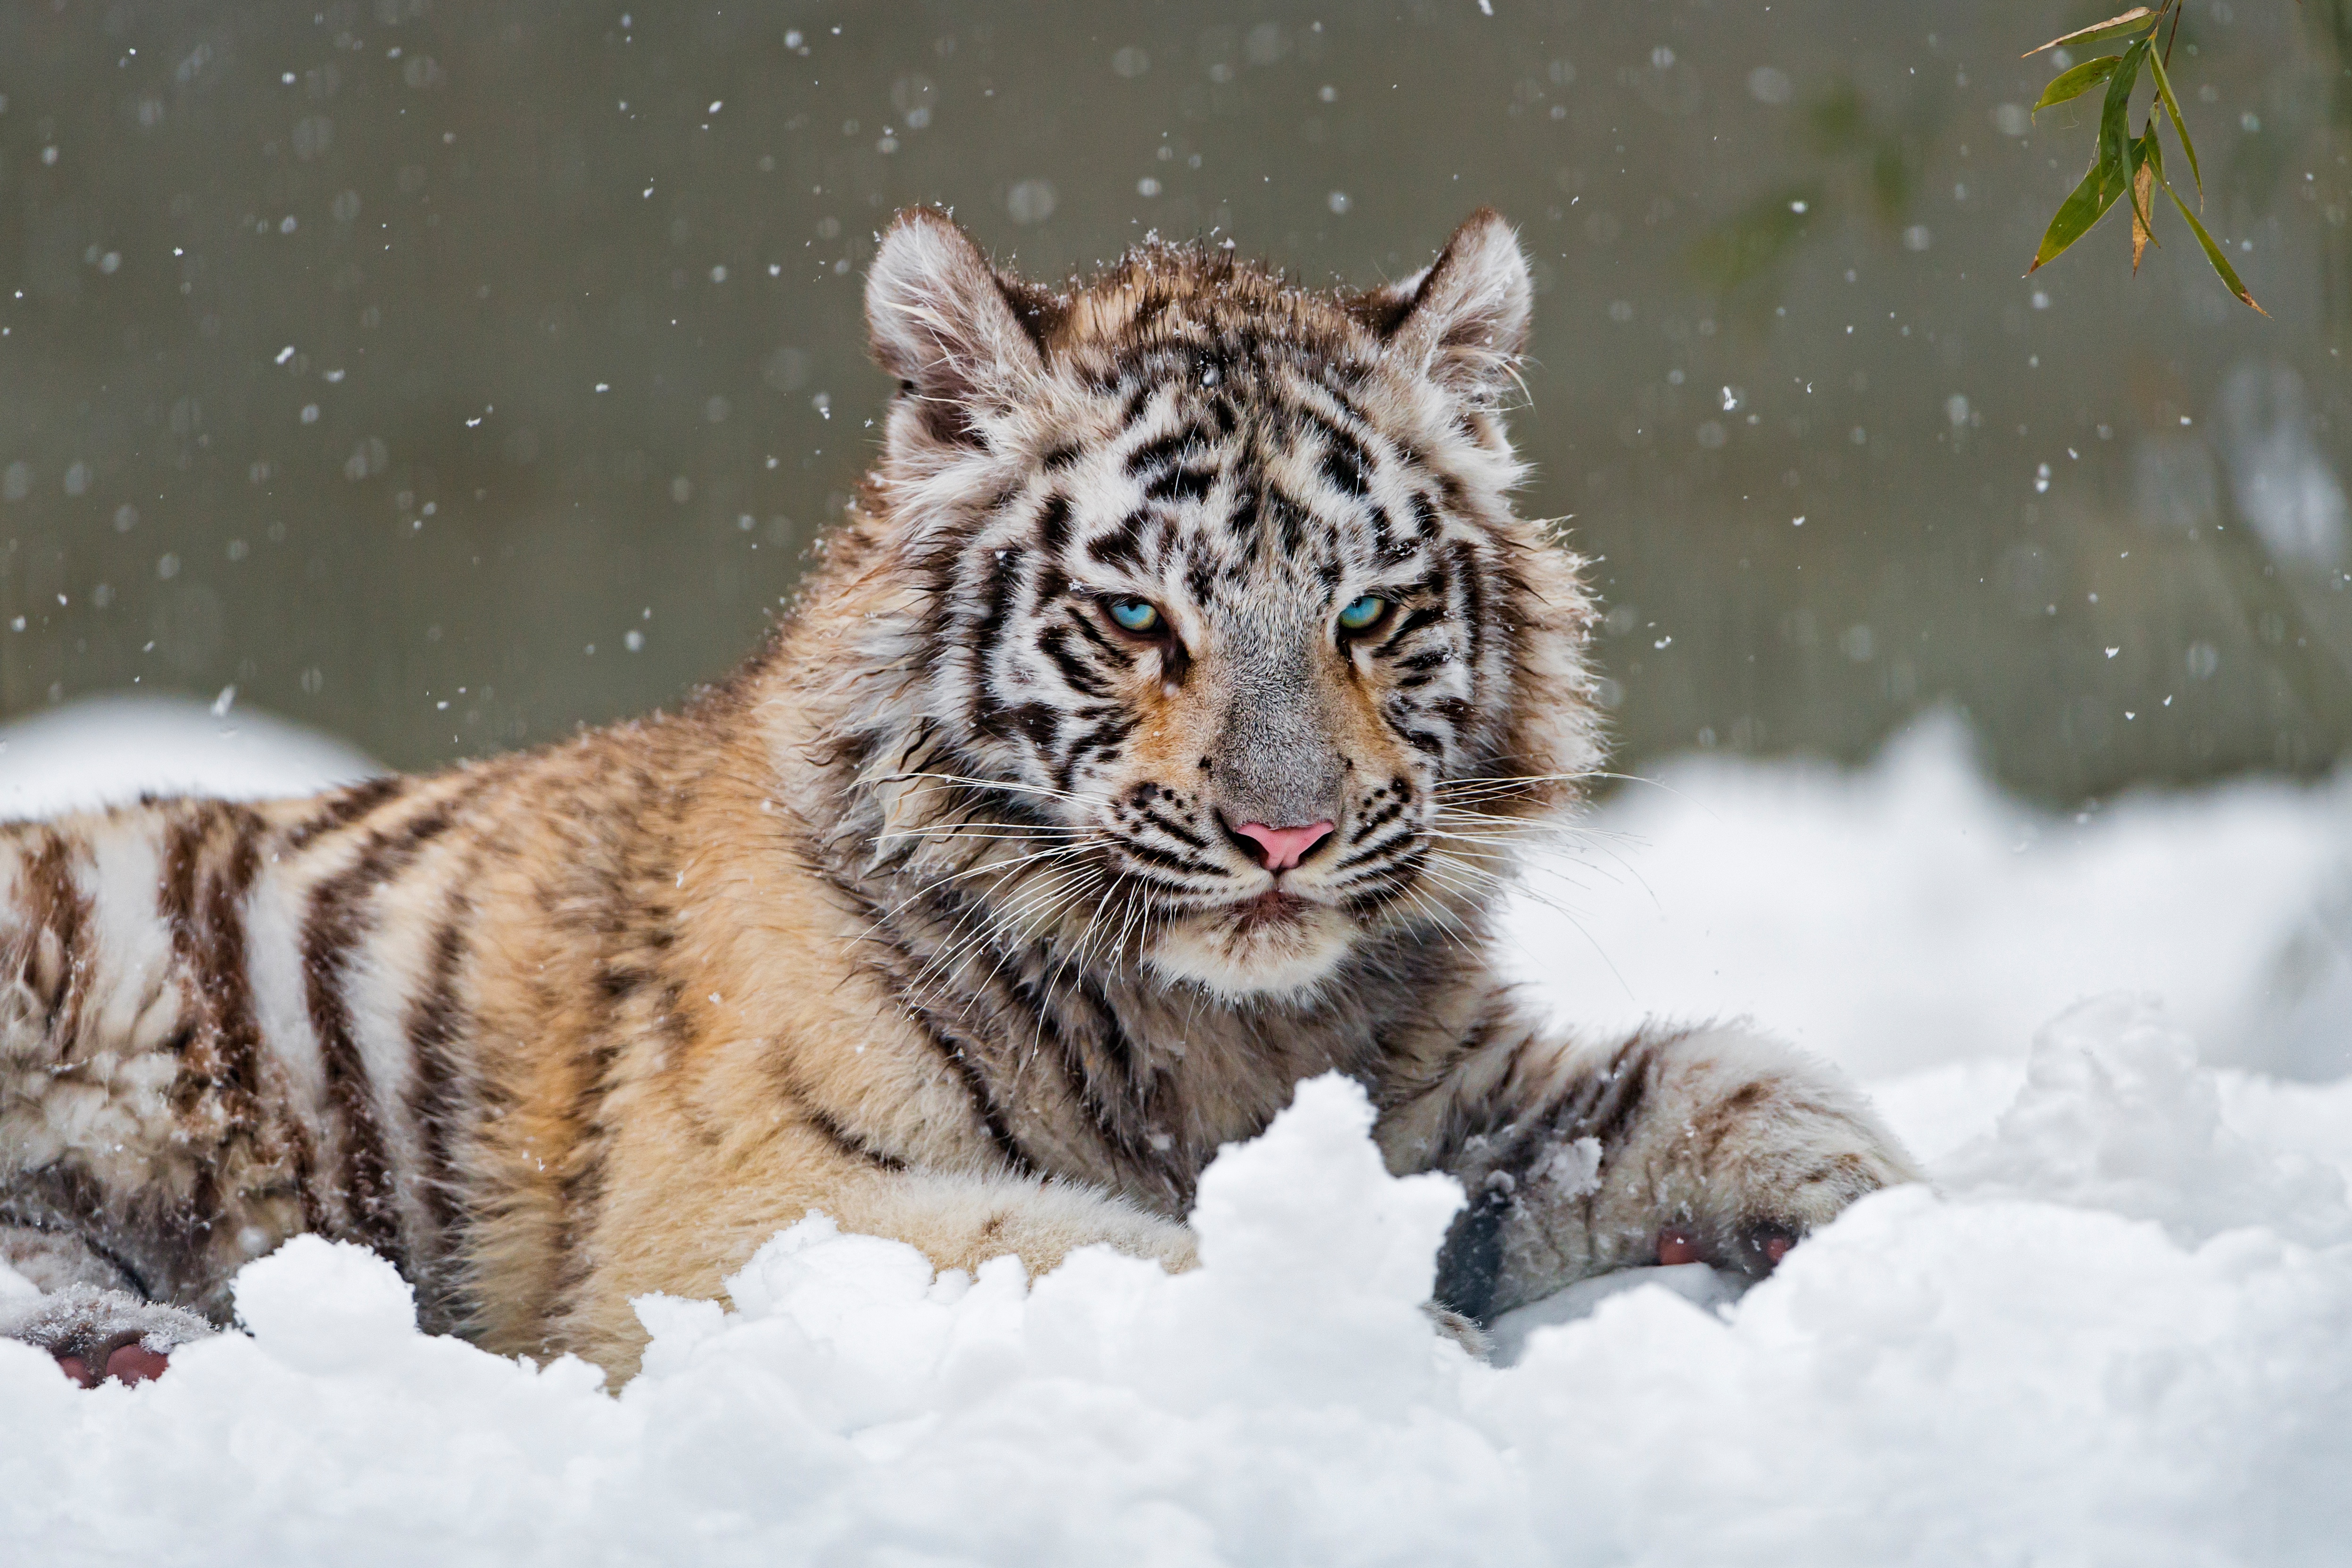 Descarga gratuita de fondo de pantalla para móvil de Animales, Invierno, Gatos, Nieve, Tigre, Tigre Blanco.